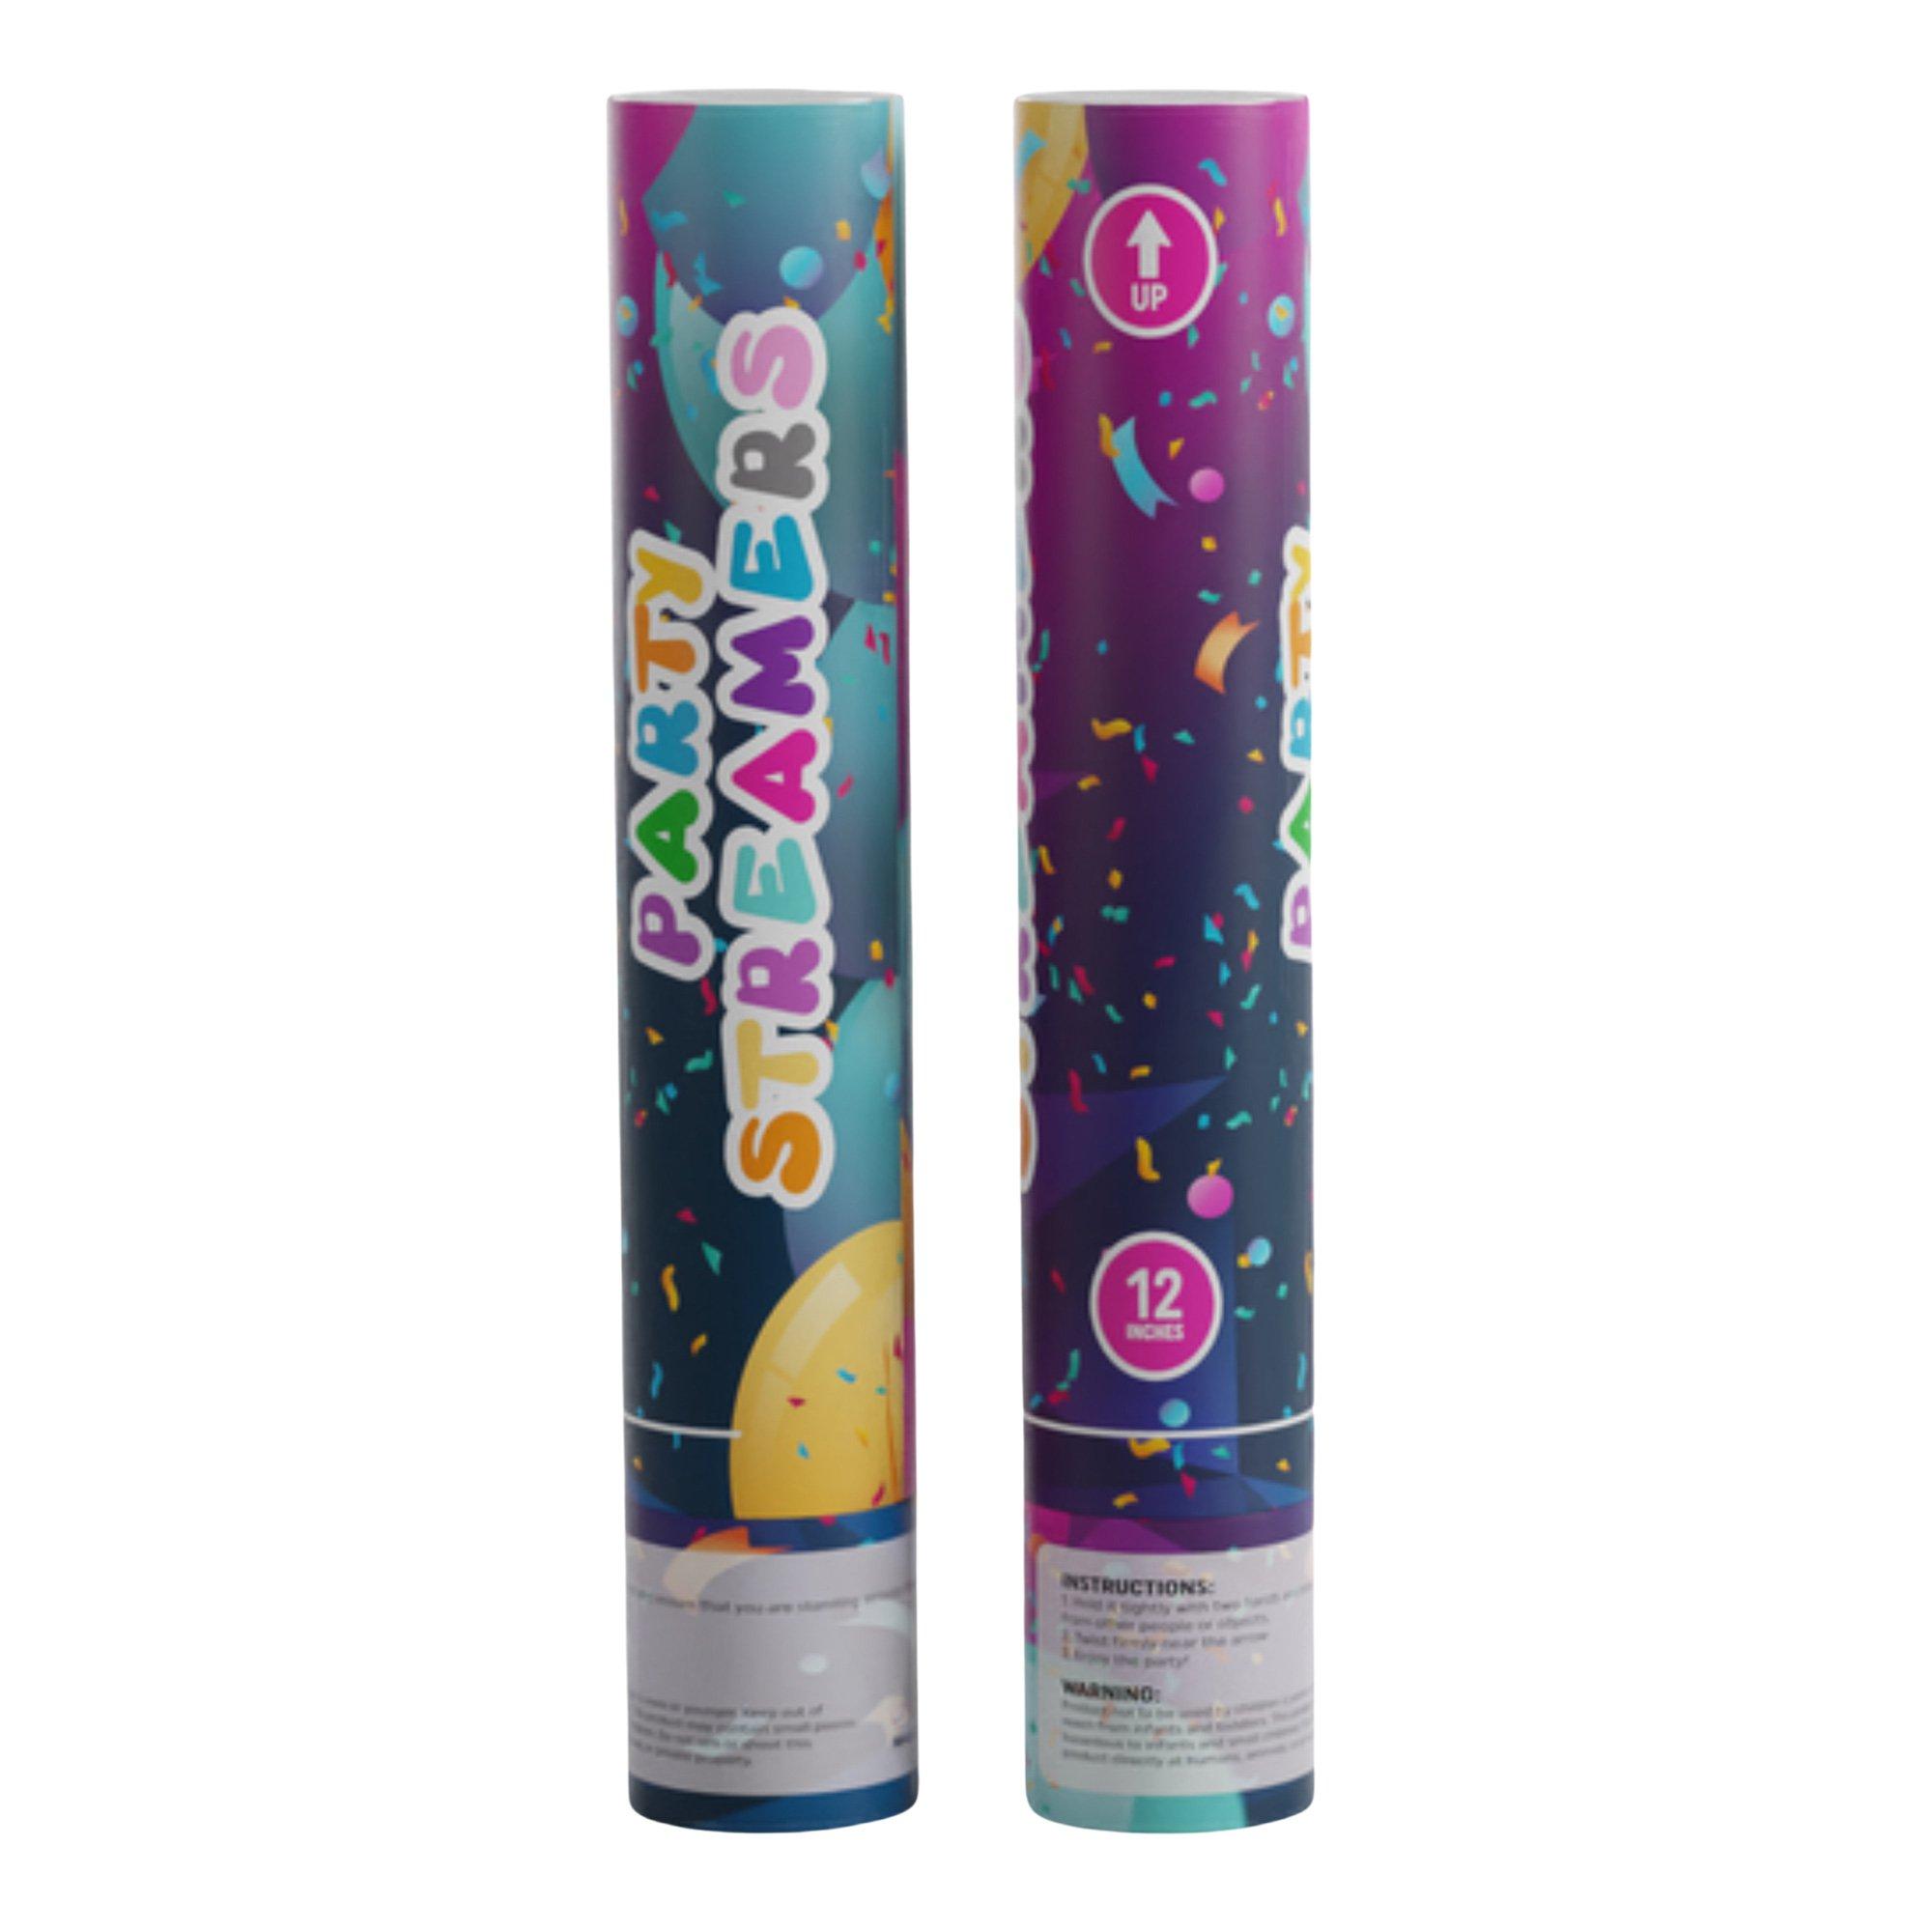 Multicolor Party Streamer Confetti Cannon, 12in